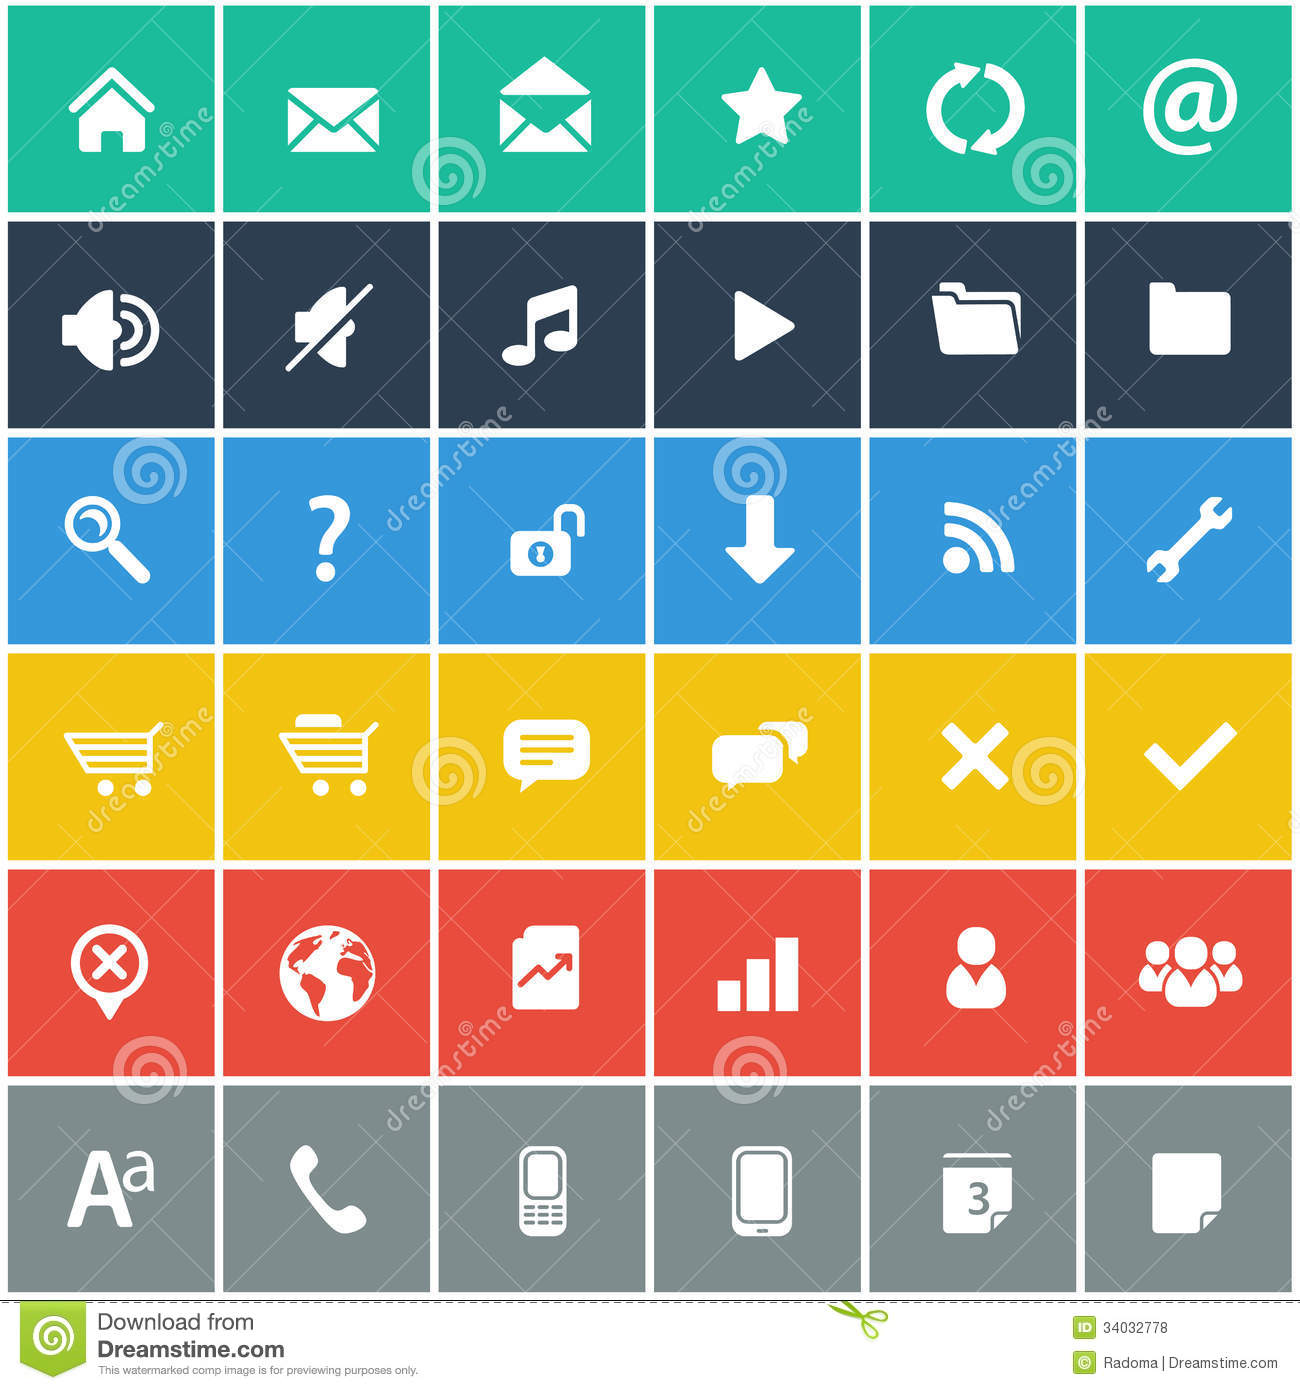 Free Mobile App Icon Set